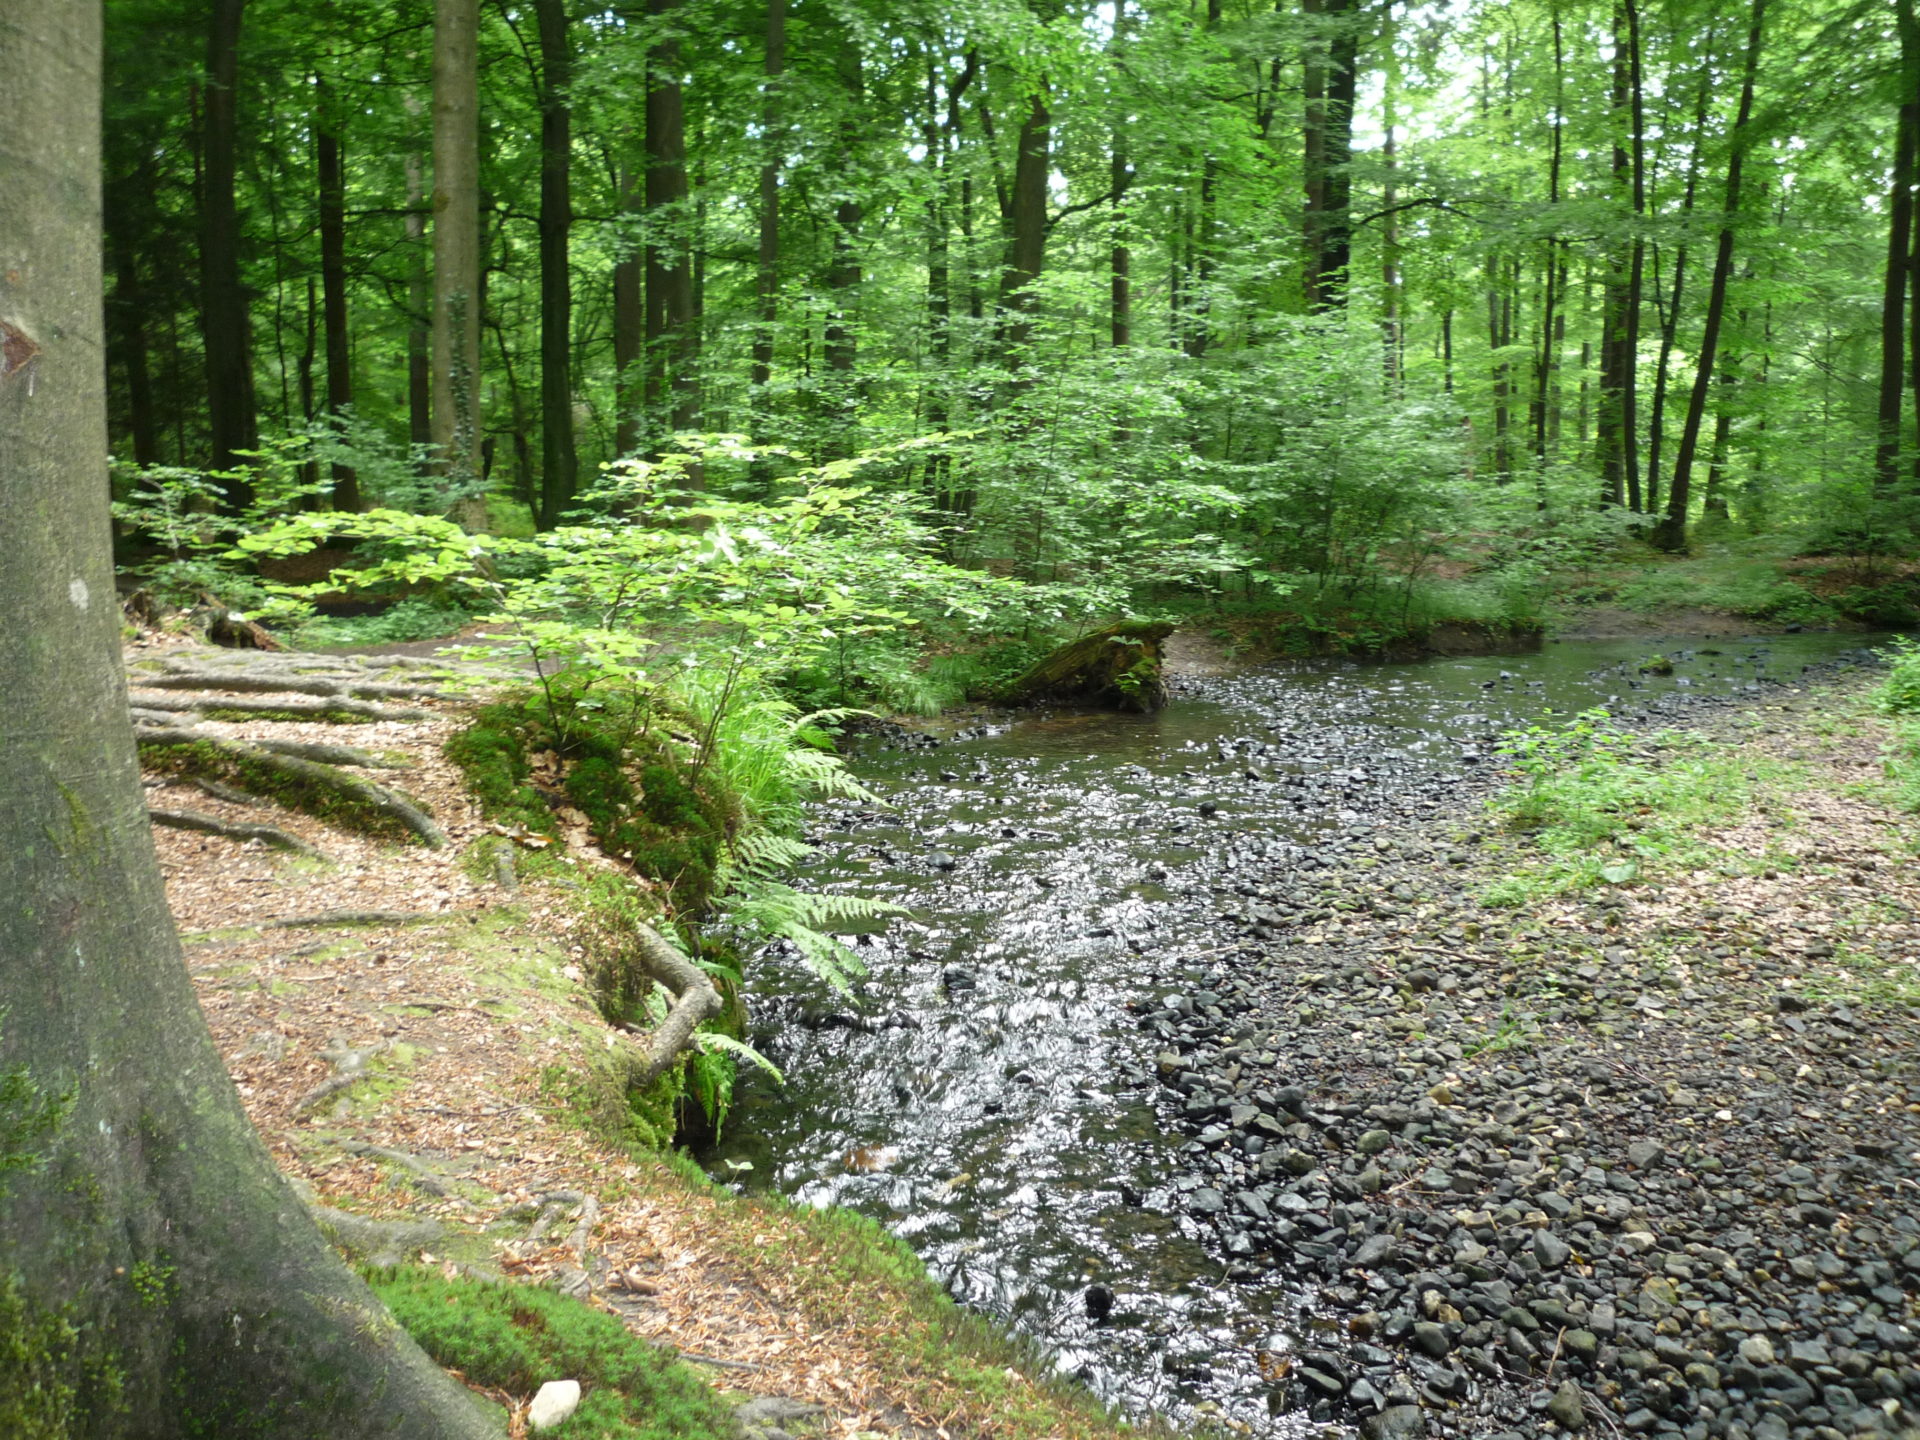 Silberbachtal mit grünen Bäumen im Hintergrund.